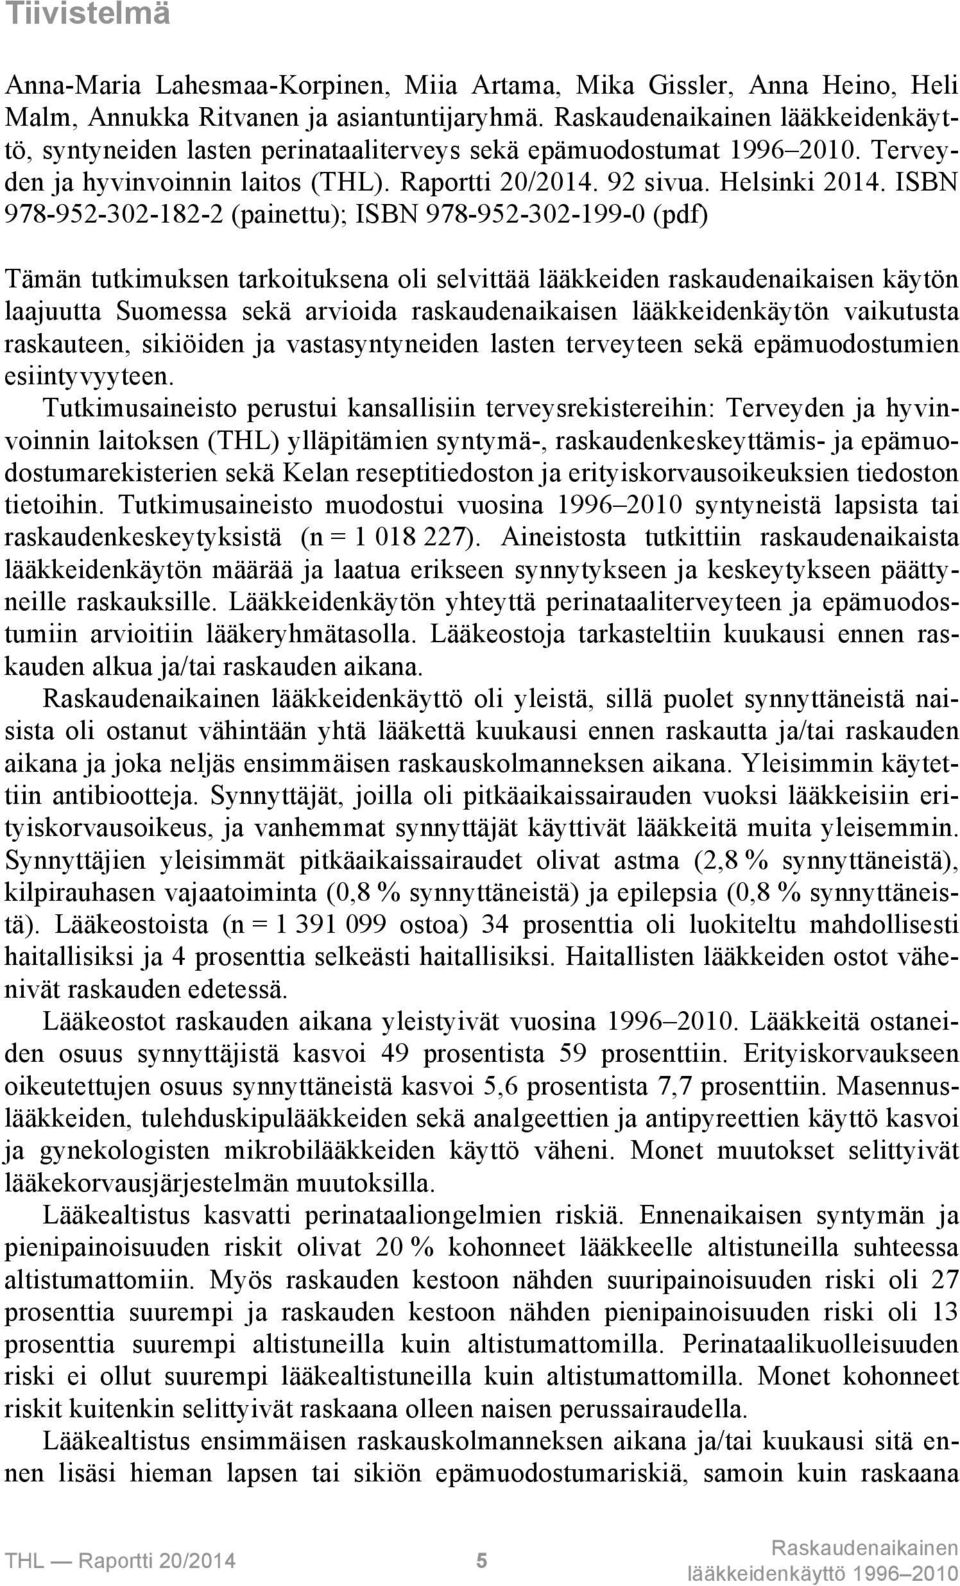 ISBN 978-952-302-182-2 (painettu); ISBN 978-952-302-199-0 (pdf) Tämän tutkimuksen tarkoituksena oli selvittää lääkkeiden raskaudenaikaisen käytön laajuutta Suomessa sekä arvioida raskaudenaikaisen